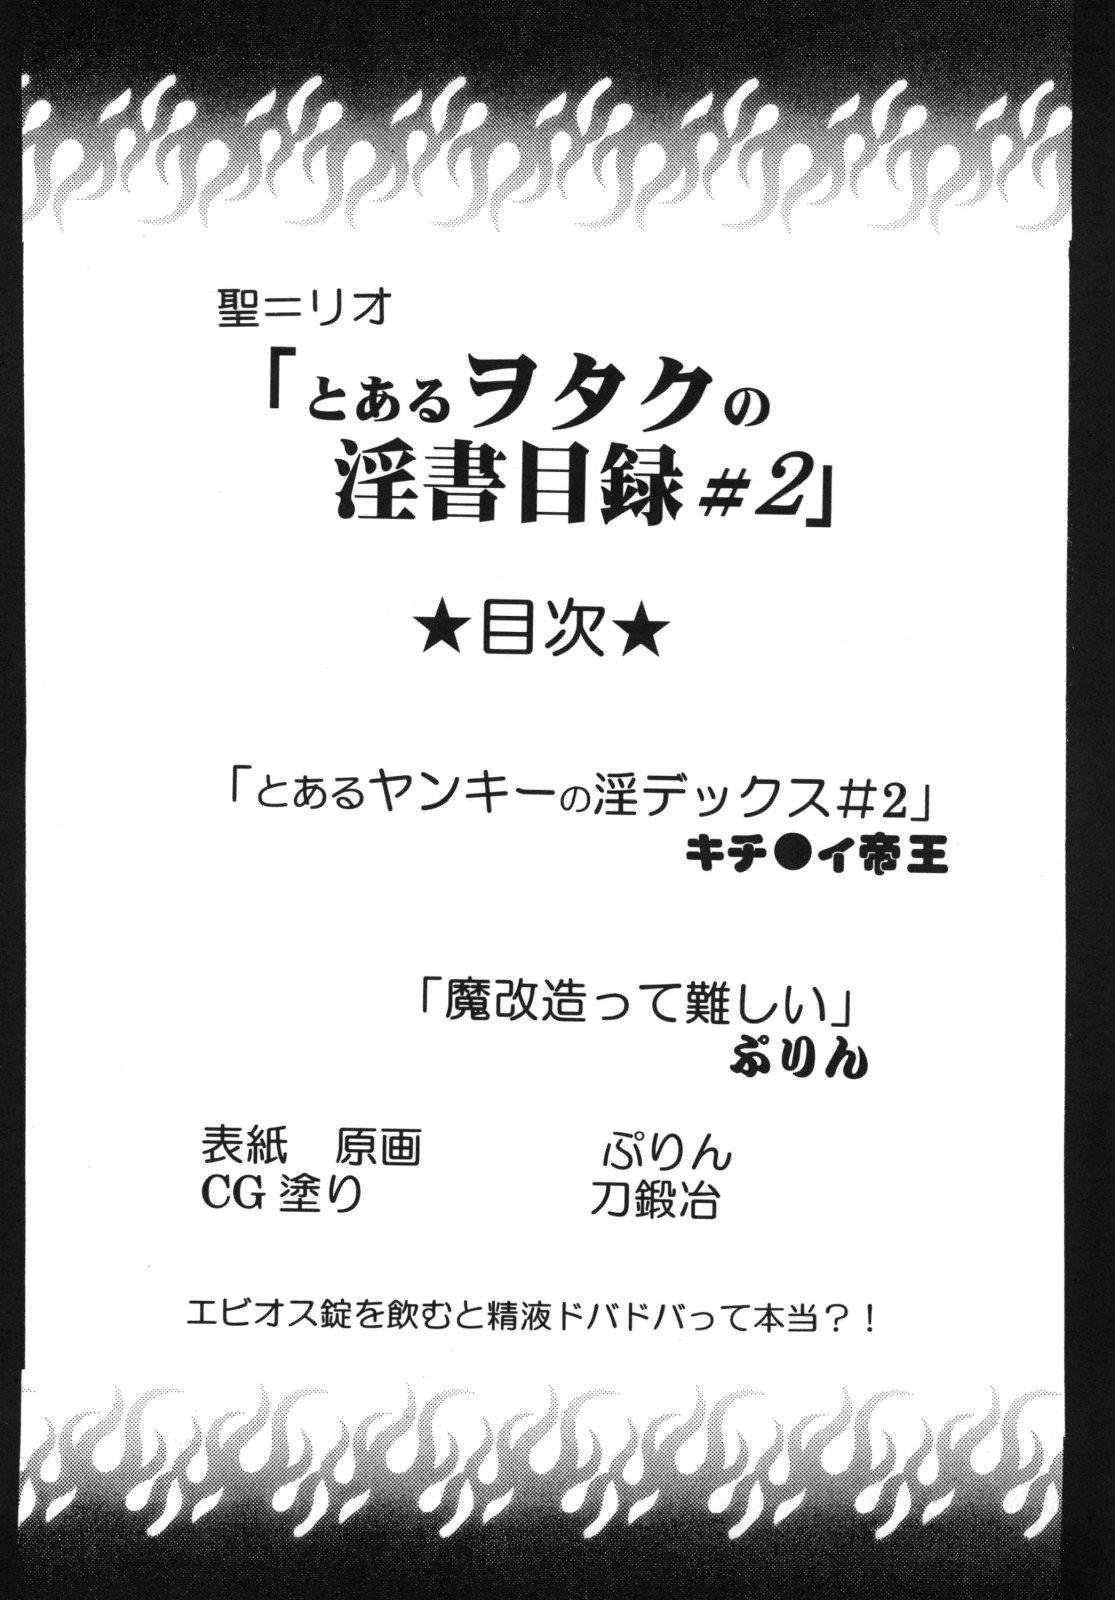 Tinder Toaru Otaku no Index #2 - Toaru majutsu no index Gay Brownhair - Page 4